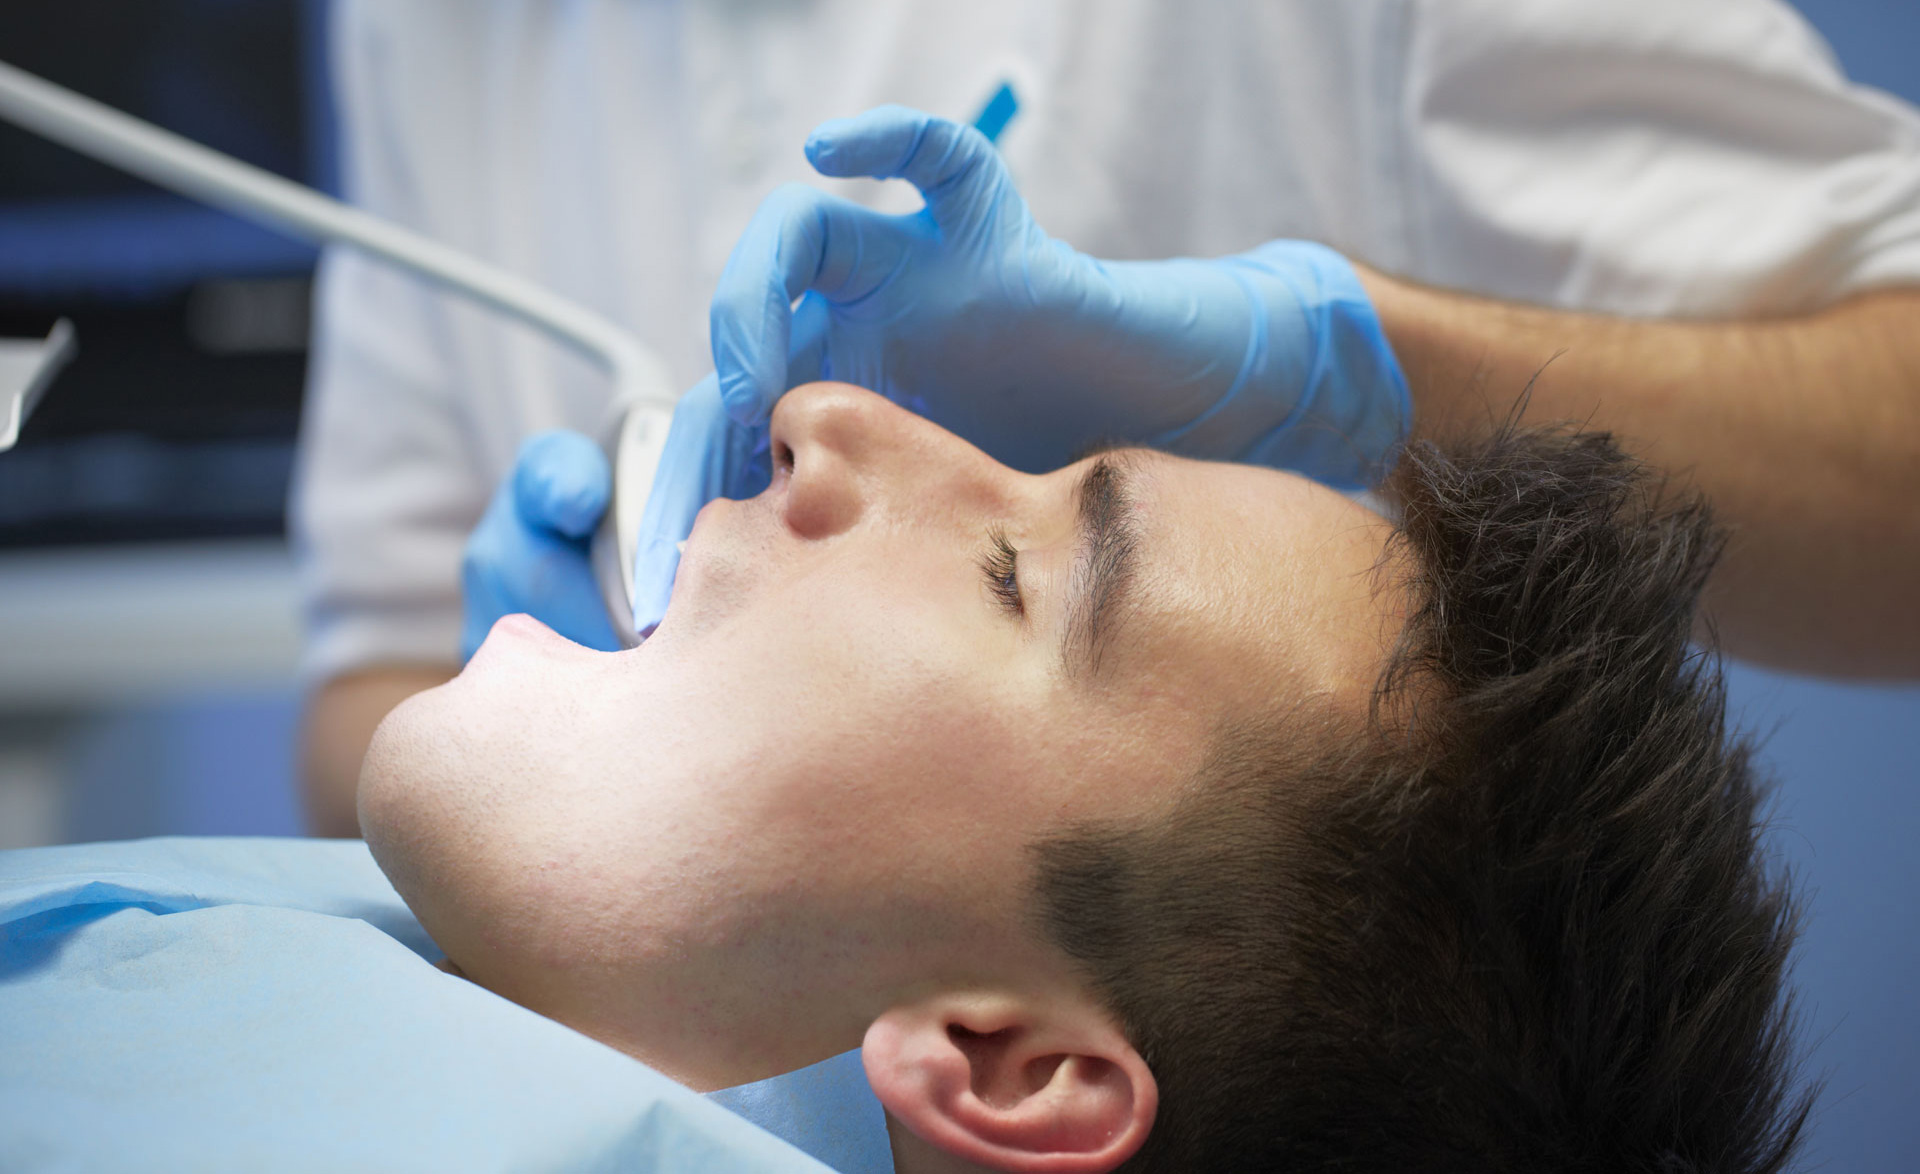 Artdent Fogászat budapesti rendelőjében Dr. Varajti Artúr fogorvos fogkőeltávolítást végez egy férfin.